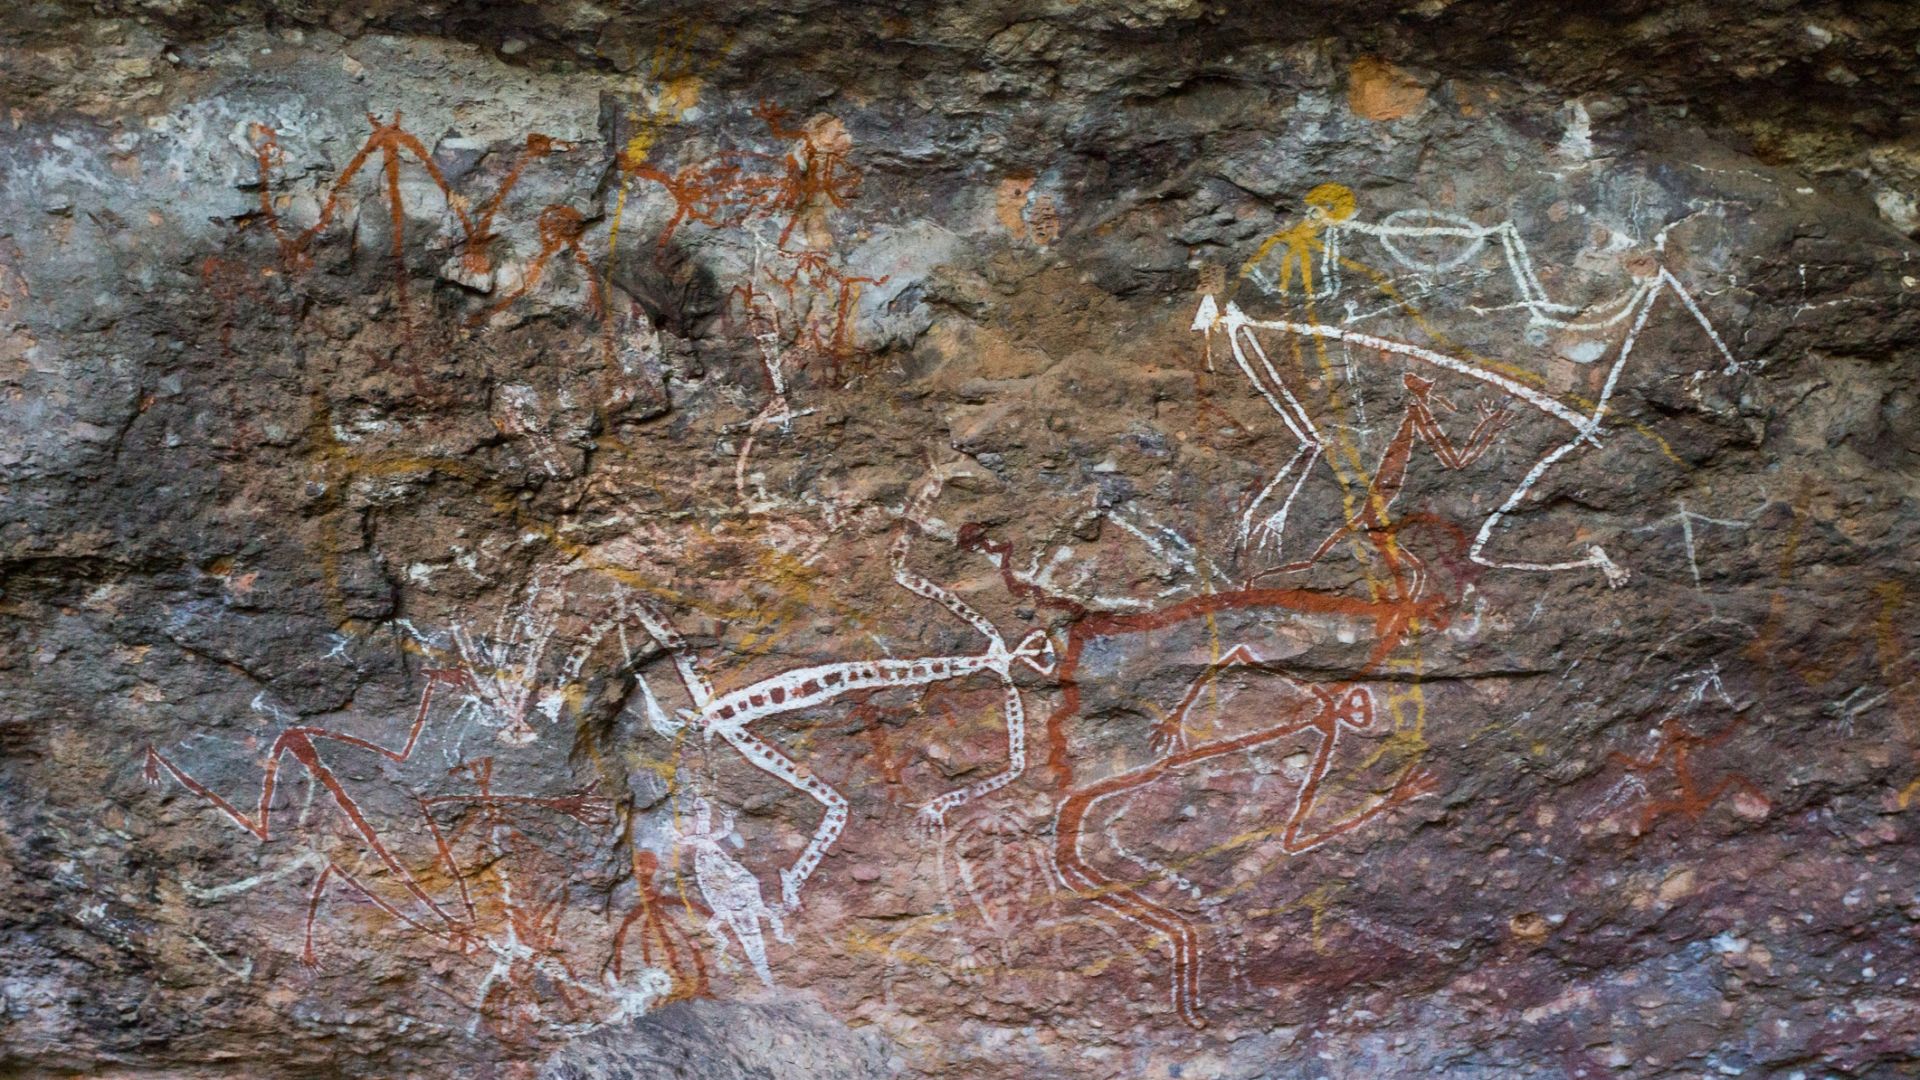  Първите заселници в Австралия пристигнали на континета преди 50 000 г.